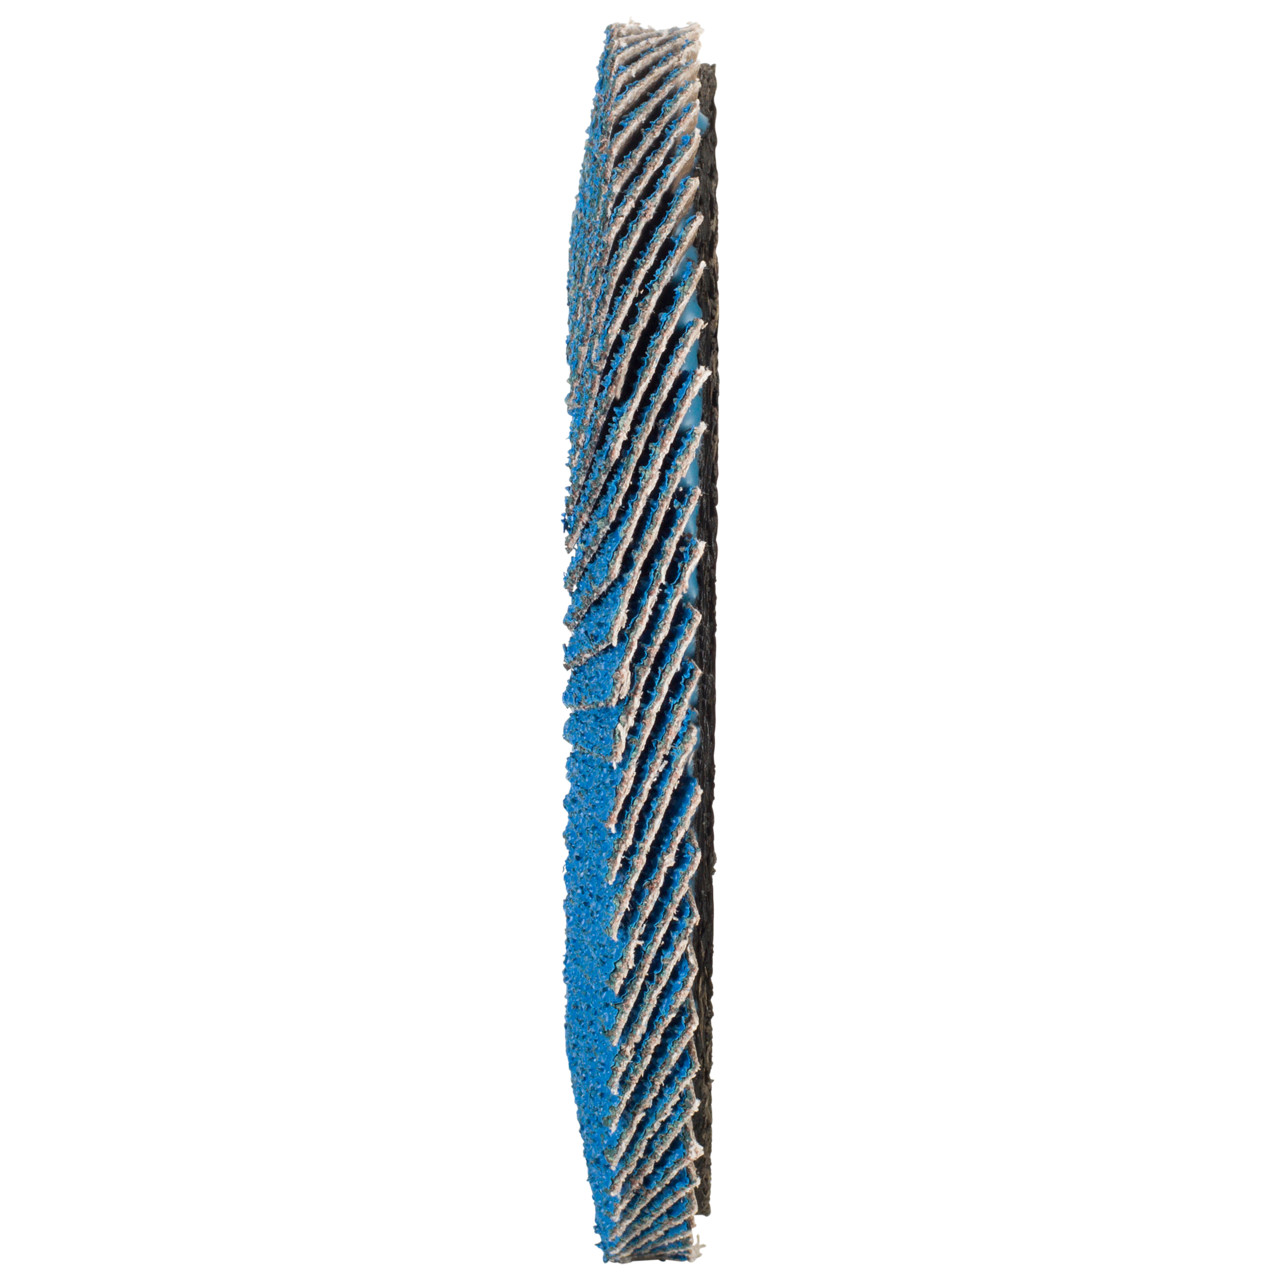 TYROLIT Fächerscheibe DxH 125x22,2 FASTCUT für Stahl & Edelstahl, P80, Form: 28N - gerade Ausführung (Kunststoffträgerkörper), Art. 458031